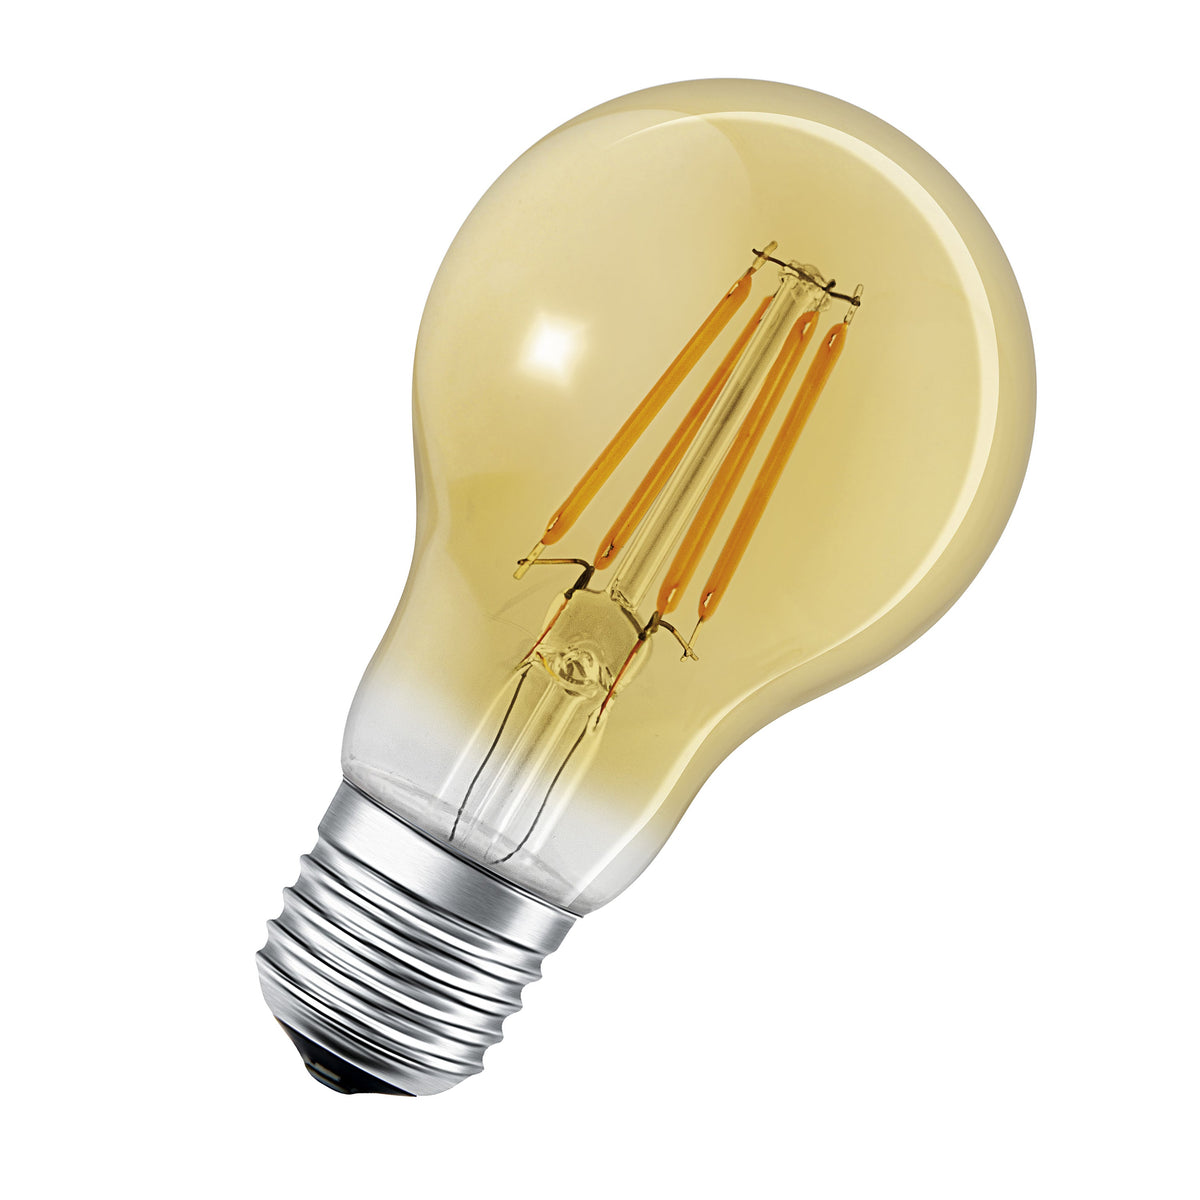 Lampada LED LEDVANCE Smart con ZigBee, attacco E27, dimmerabile, bianco caldo (2400K), forma a lampadina dorata, filamento trasparente, ricambio per lampadine da 55 W, controllabile con sistemi come Alexa, Google o Hue, confezione da 1